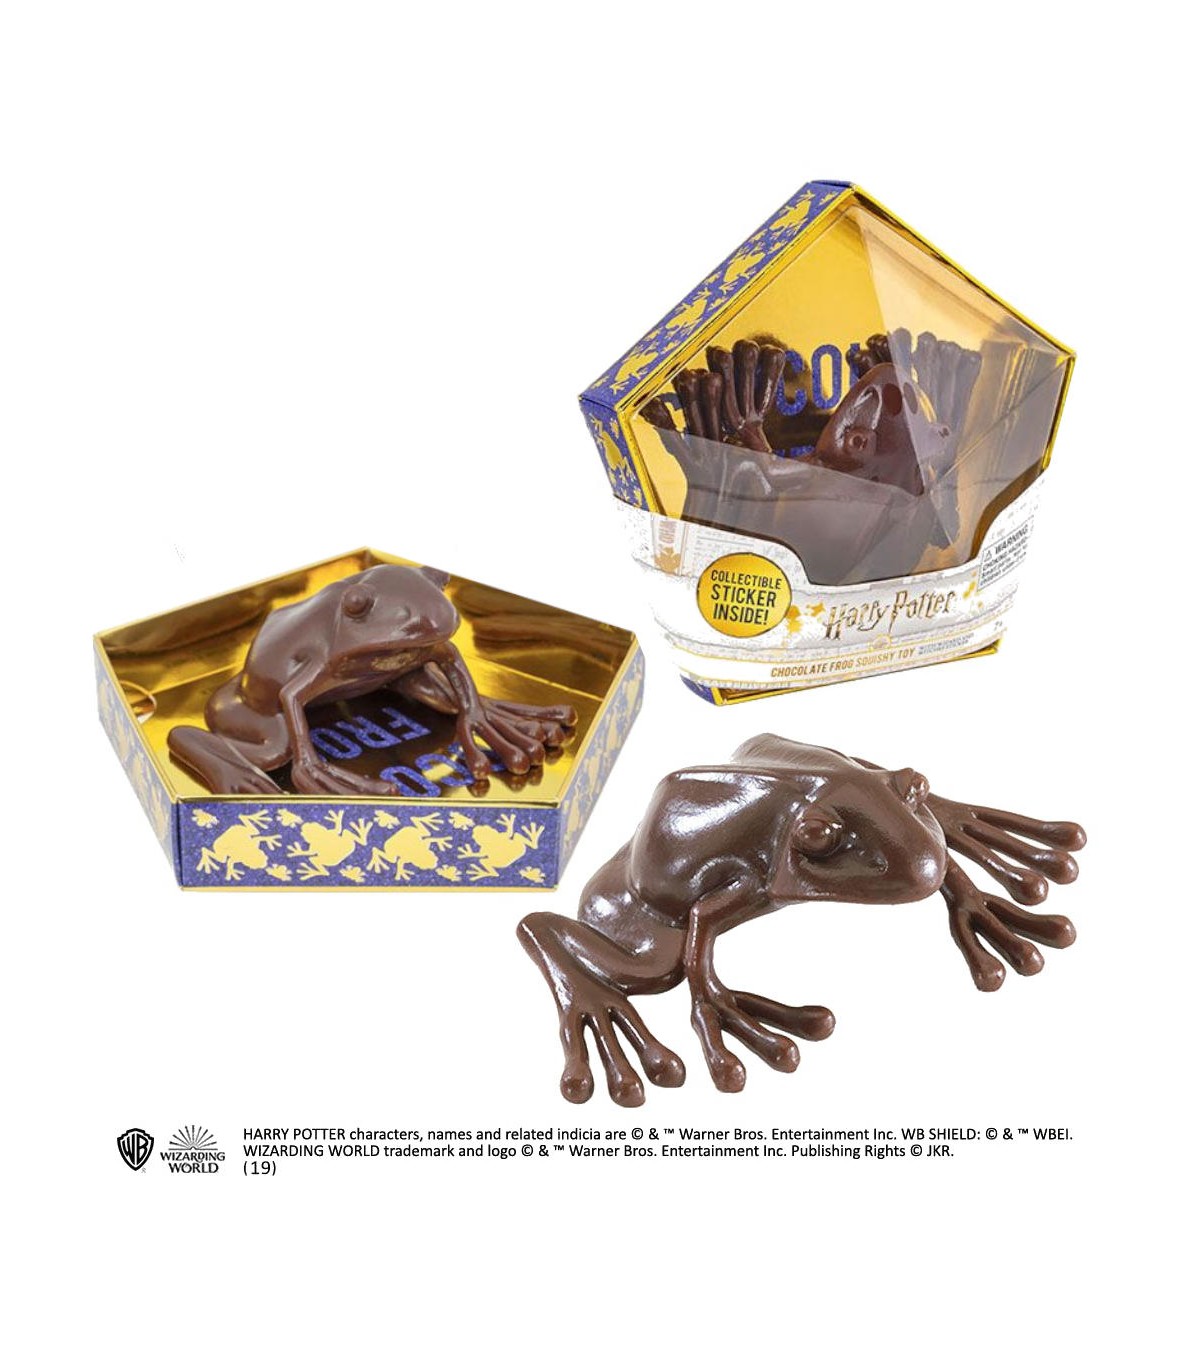 Réplica Rana de chocolate Harry Potter y la Piedra Filosofal - Harry Potter